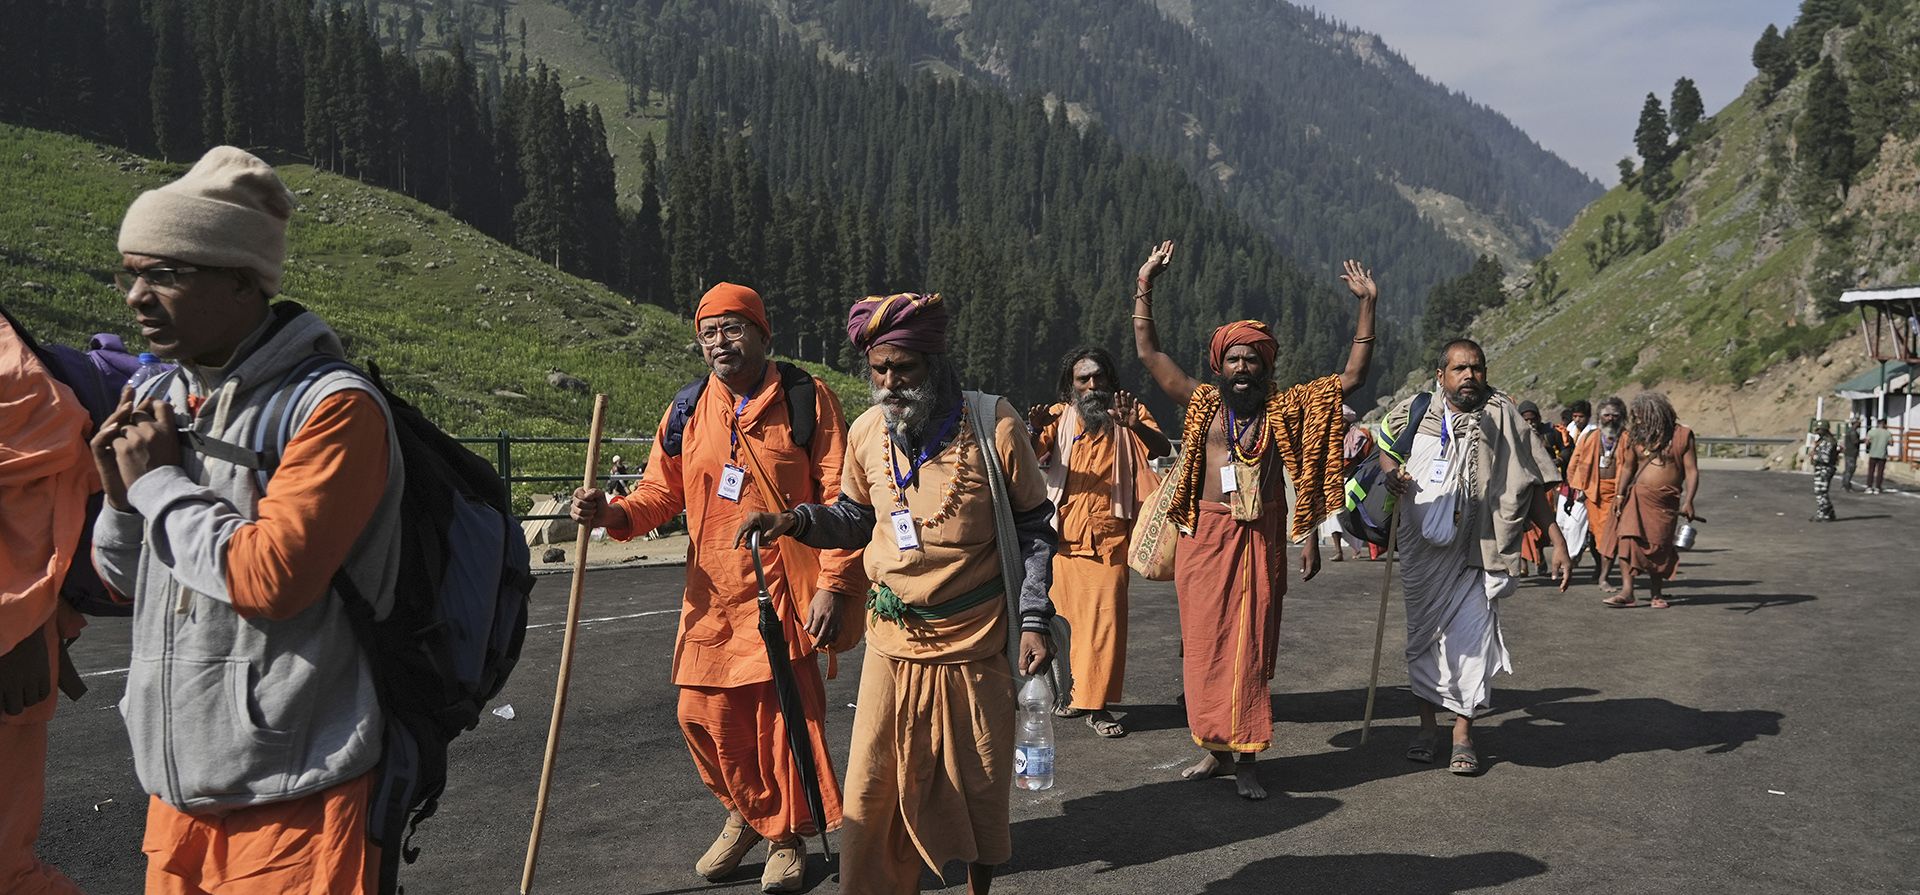 Devotos hindúes comienzan la peregrinación anual de Amarnath Yatra a una cueva helada del Himalaya, en Chandanwari, Pahalgam, al sur de Srinagar, Cachemira controlada por India, el jueves 30 de junio de 2022. Las autoridades dicen que los peregrinos enfrentan una mayor amenaza de ataques de los rebeldes que luchan contra el gobierno indio y han etiquetado por primera vez a los devotos con un sistema de seguimiento inalámbrico.